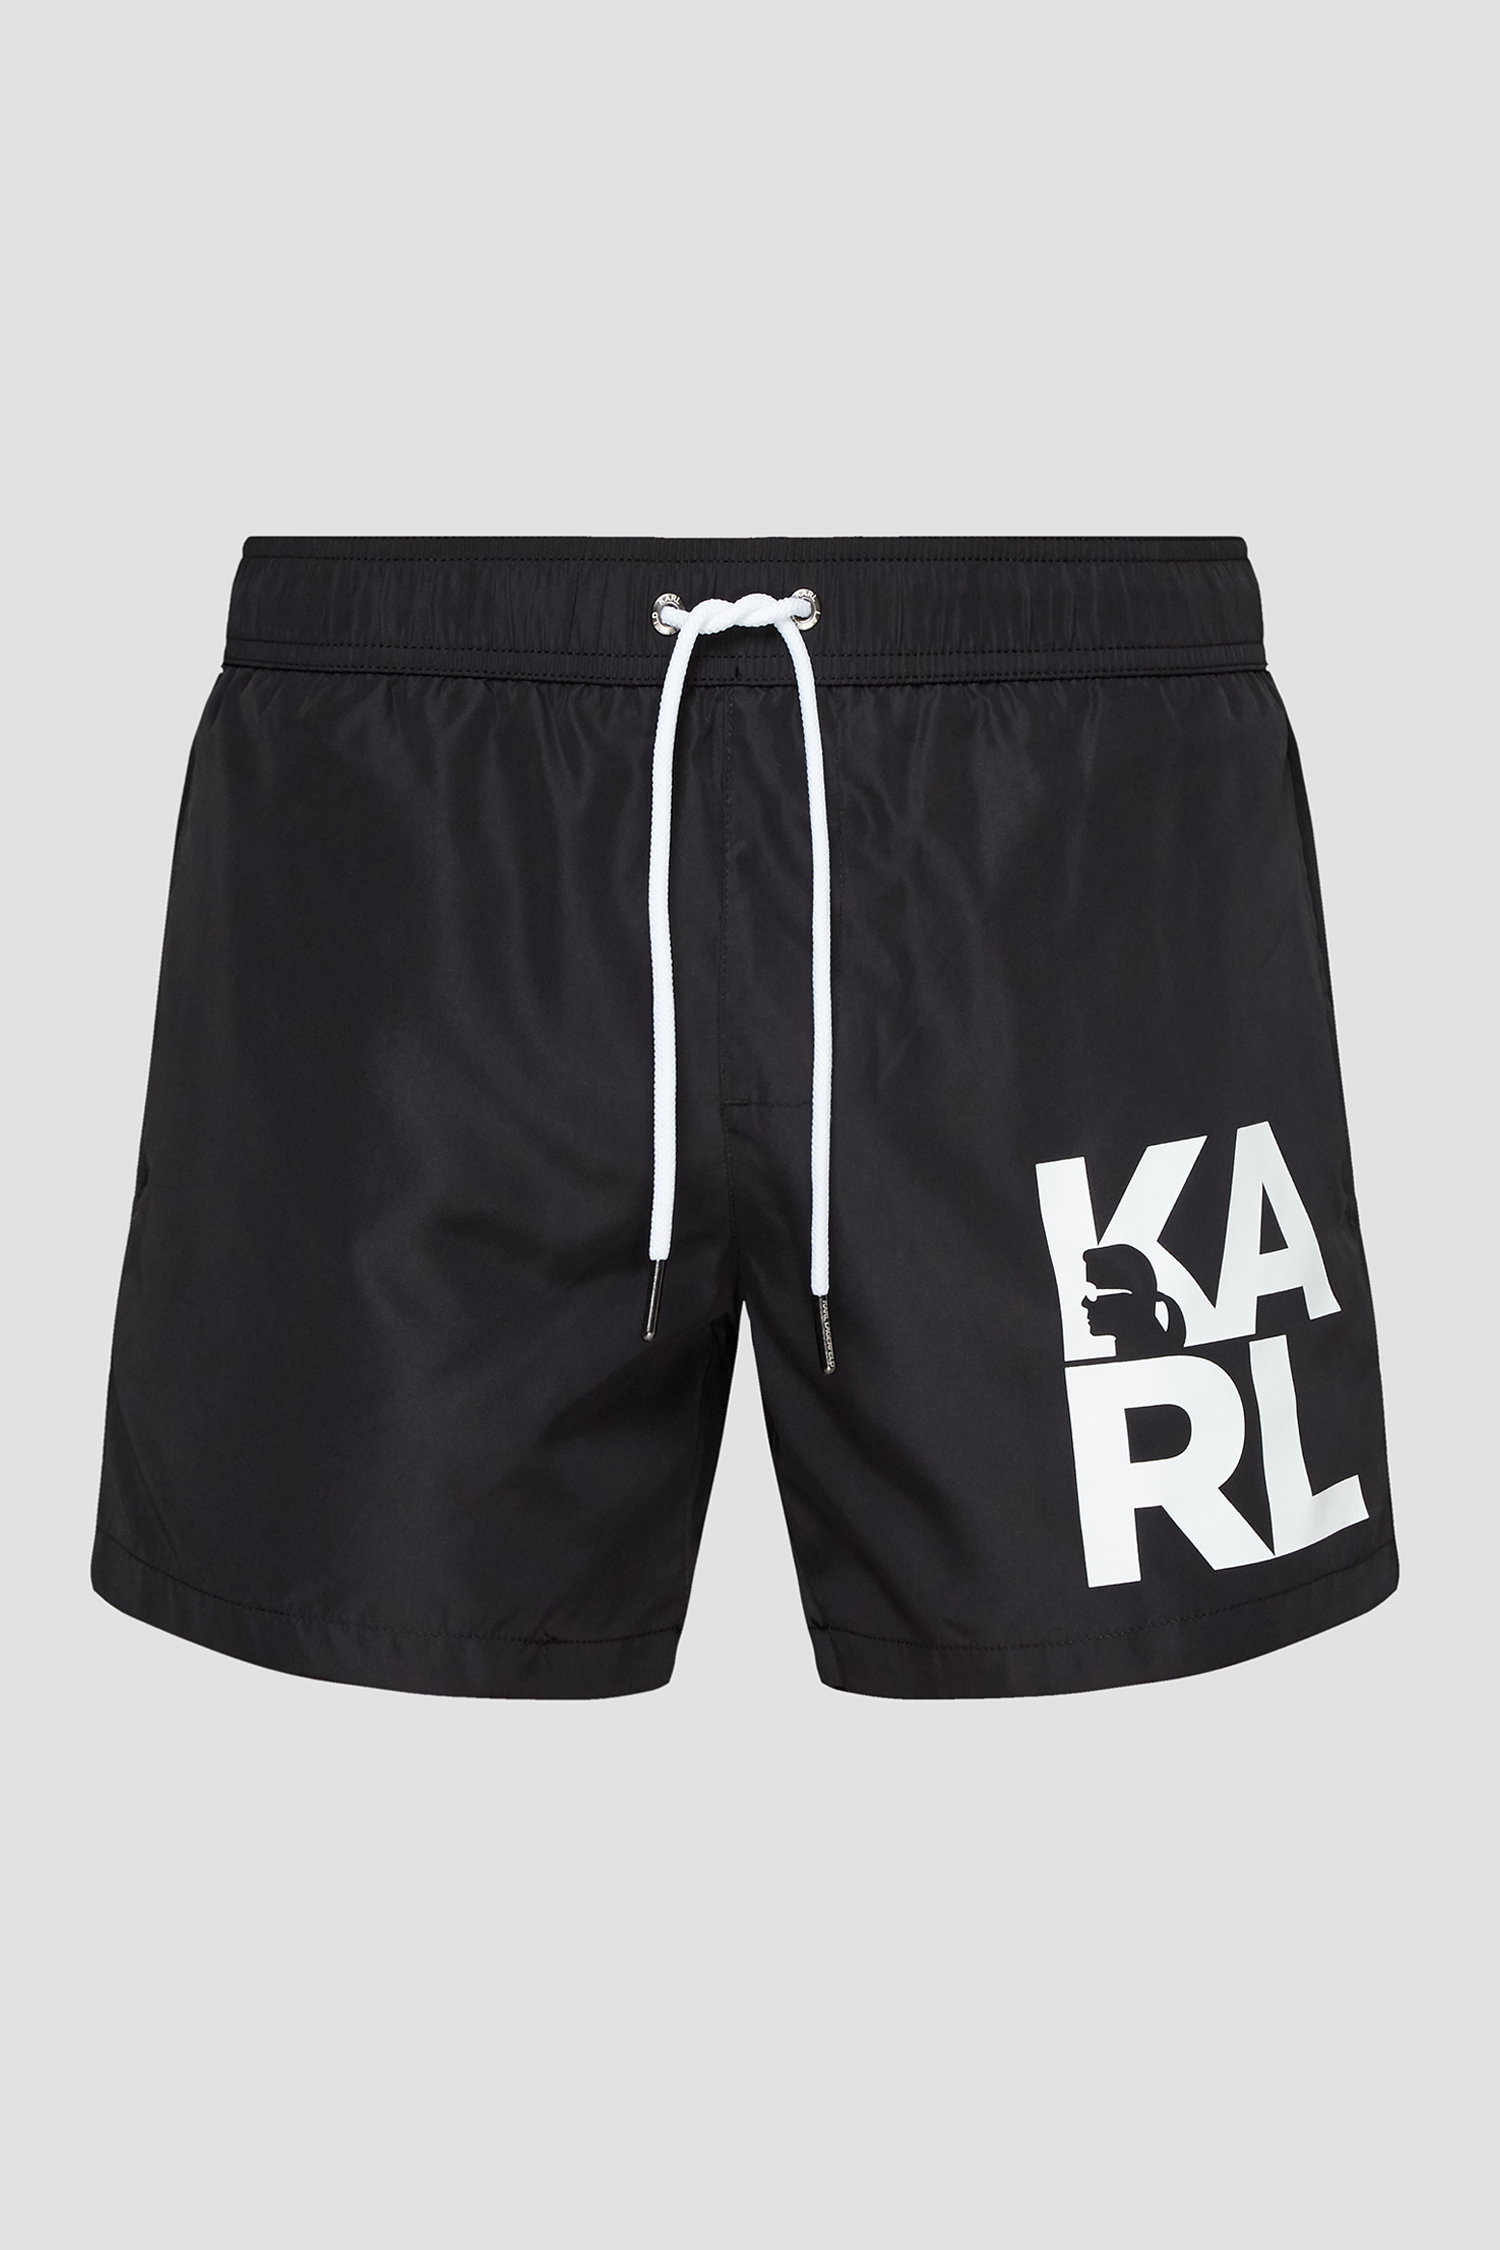 Чоловічі чорні плавальні шорти Karl Lagerfeld KL21MBS02;BLACK